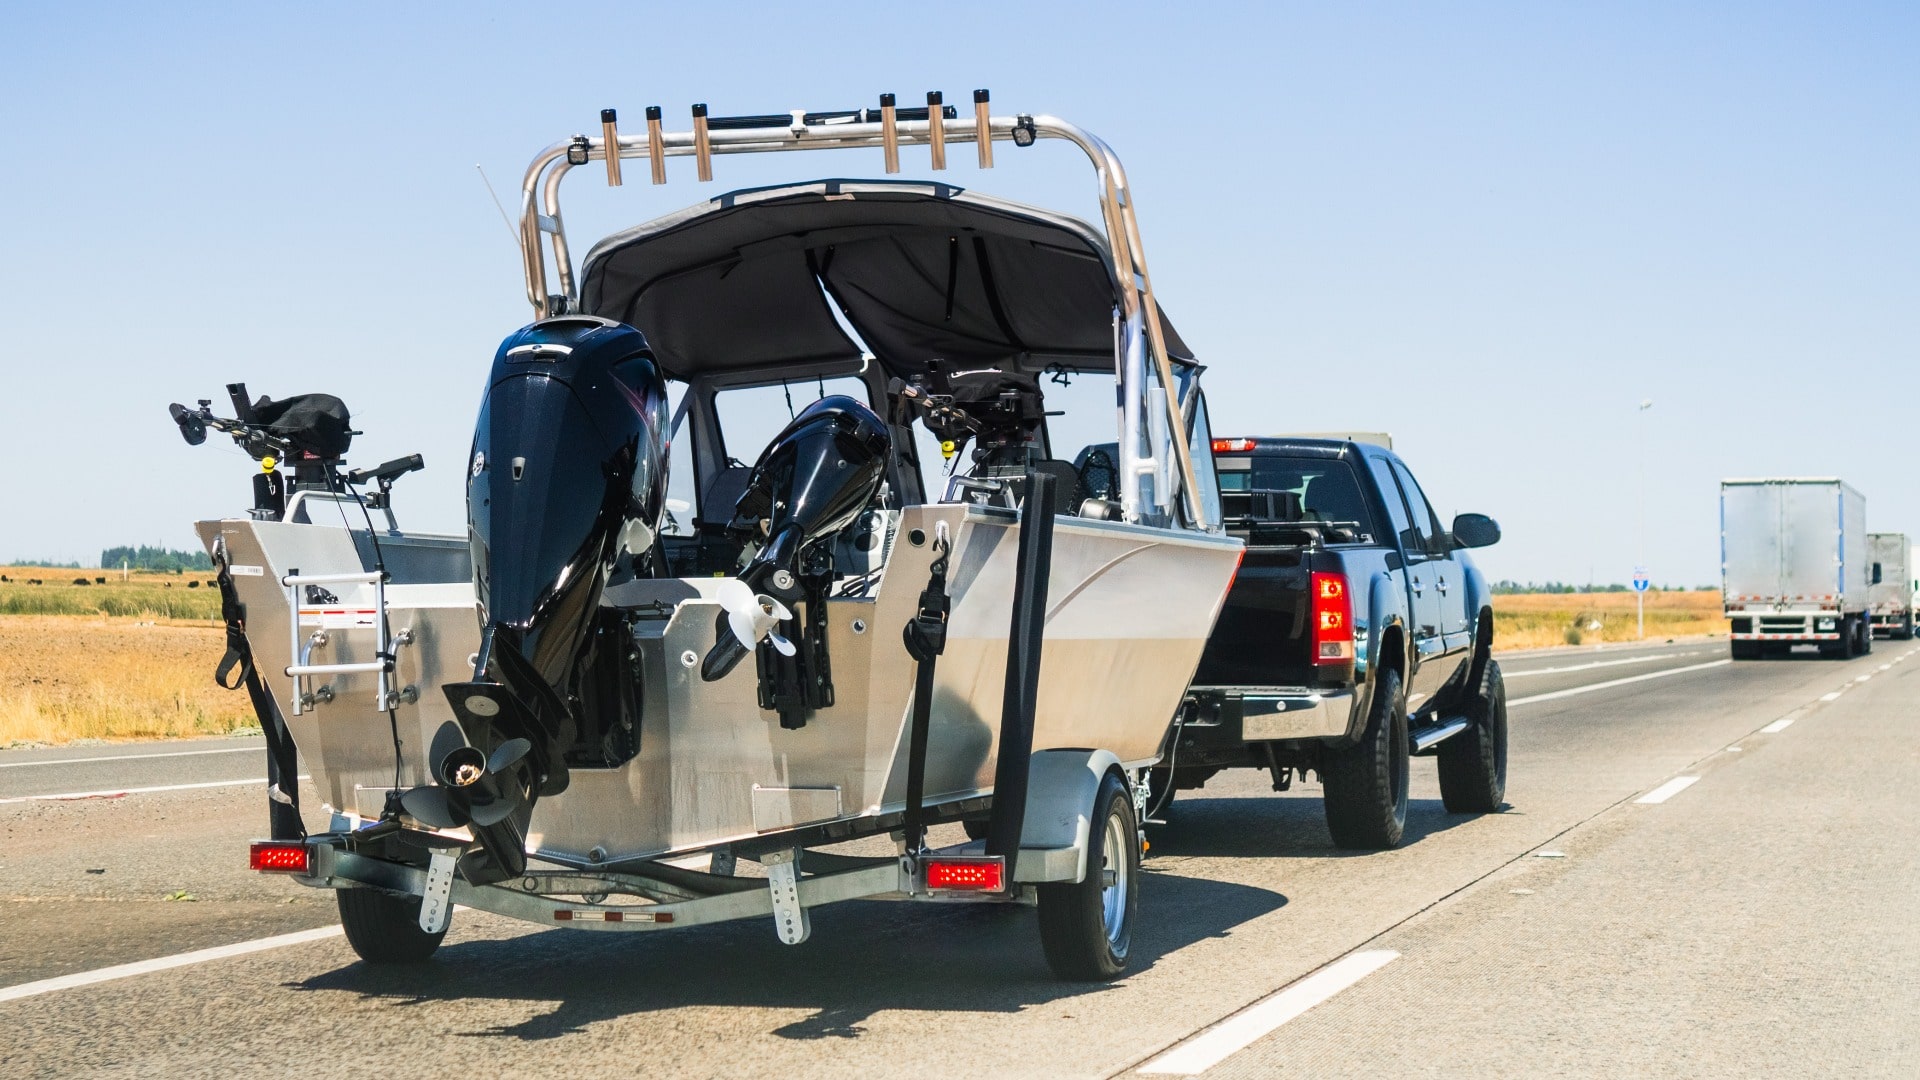 Geländewagen zieht Boot, sicher dank Fahrsicherheitstraining auf Anhänger